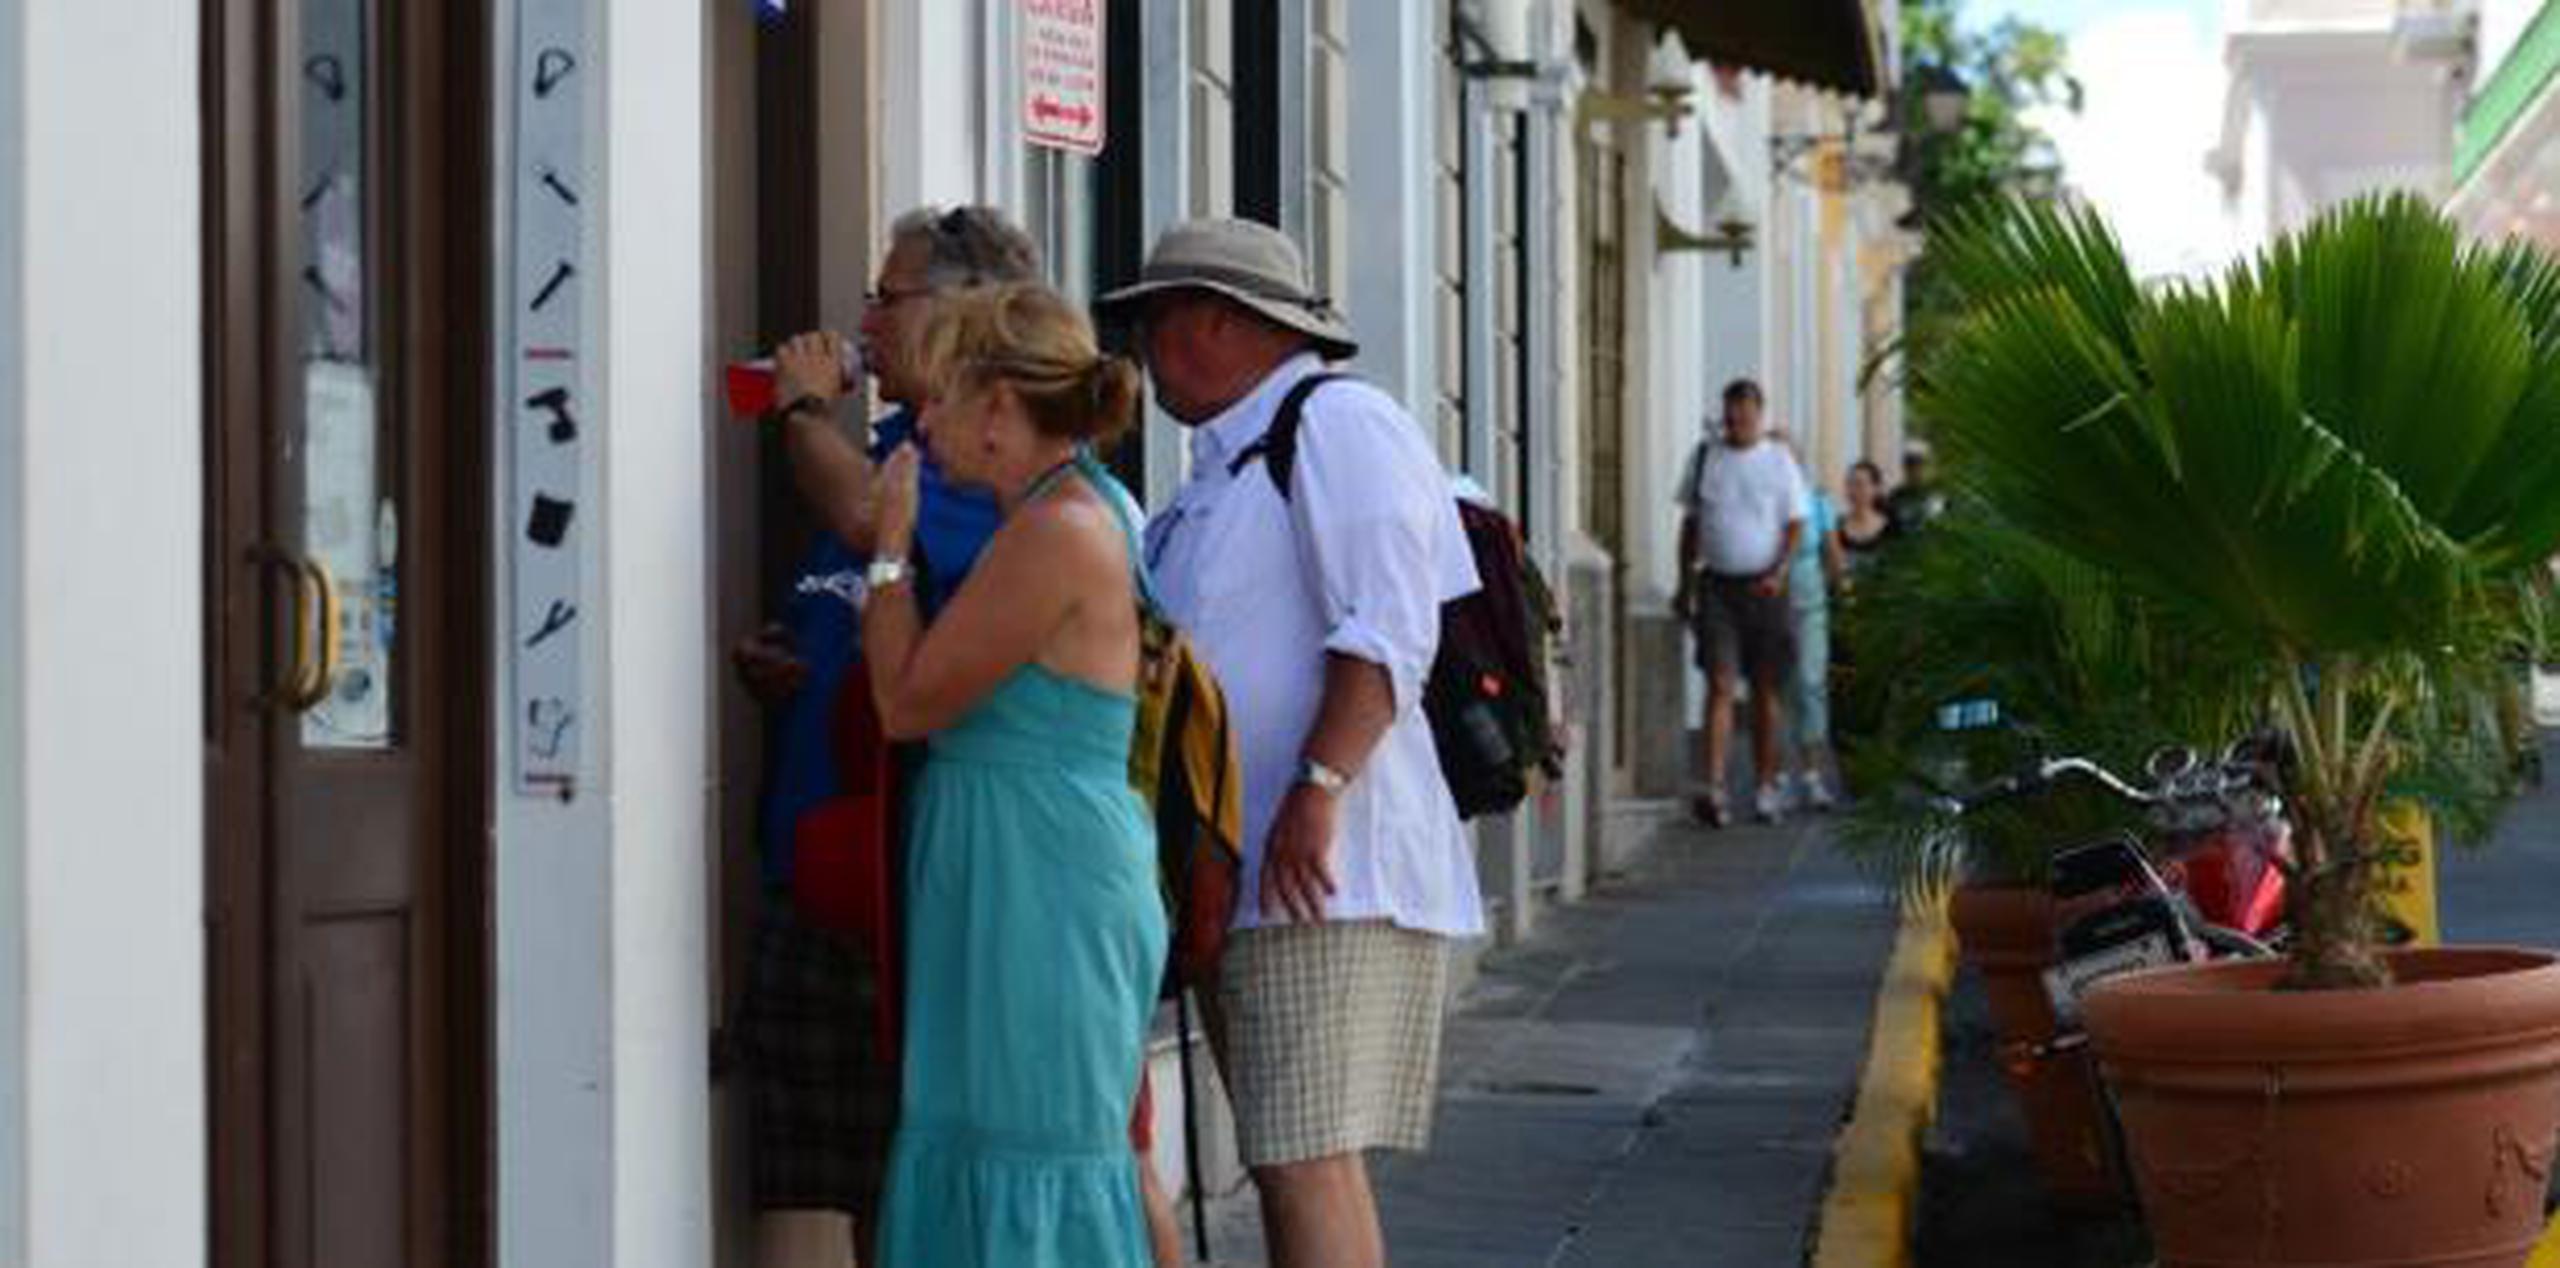 Los residentes en el Viejo San Juan llevan dos años con esfuerzos activos para evitar ser desplazados por la fiebre de los Airbnb. (Archivo)